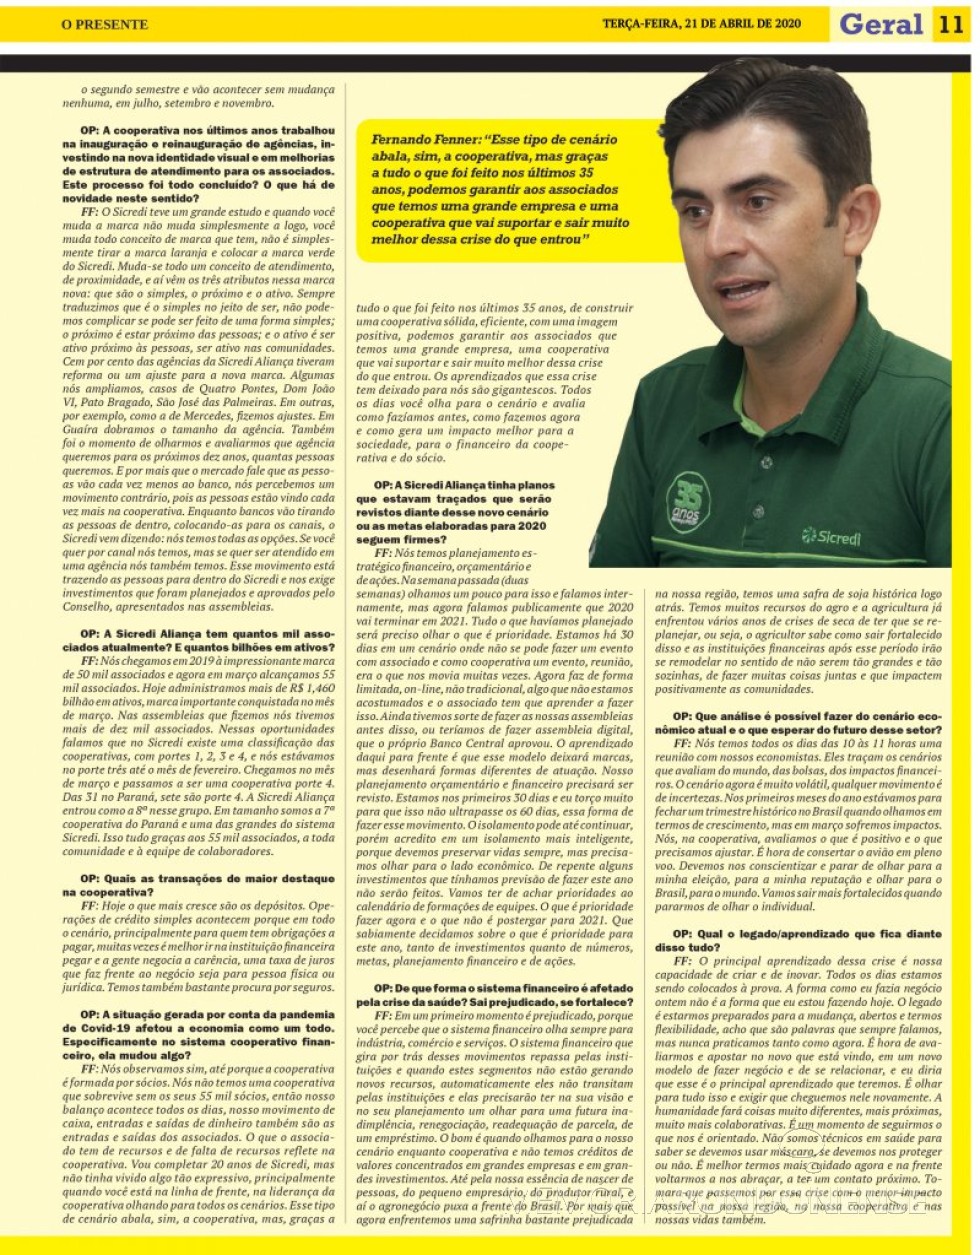 || Página final da entrevista com o diretor-executivo da Sicredi Aliança PR/SP, Fernando Fenner.
Imagem: Acervo O Presente - FOTO 21 - 